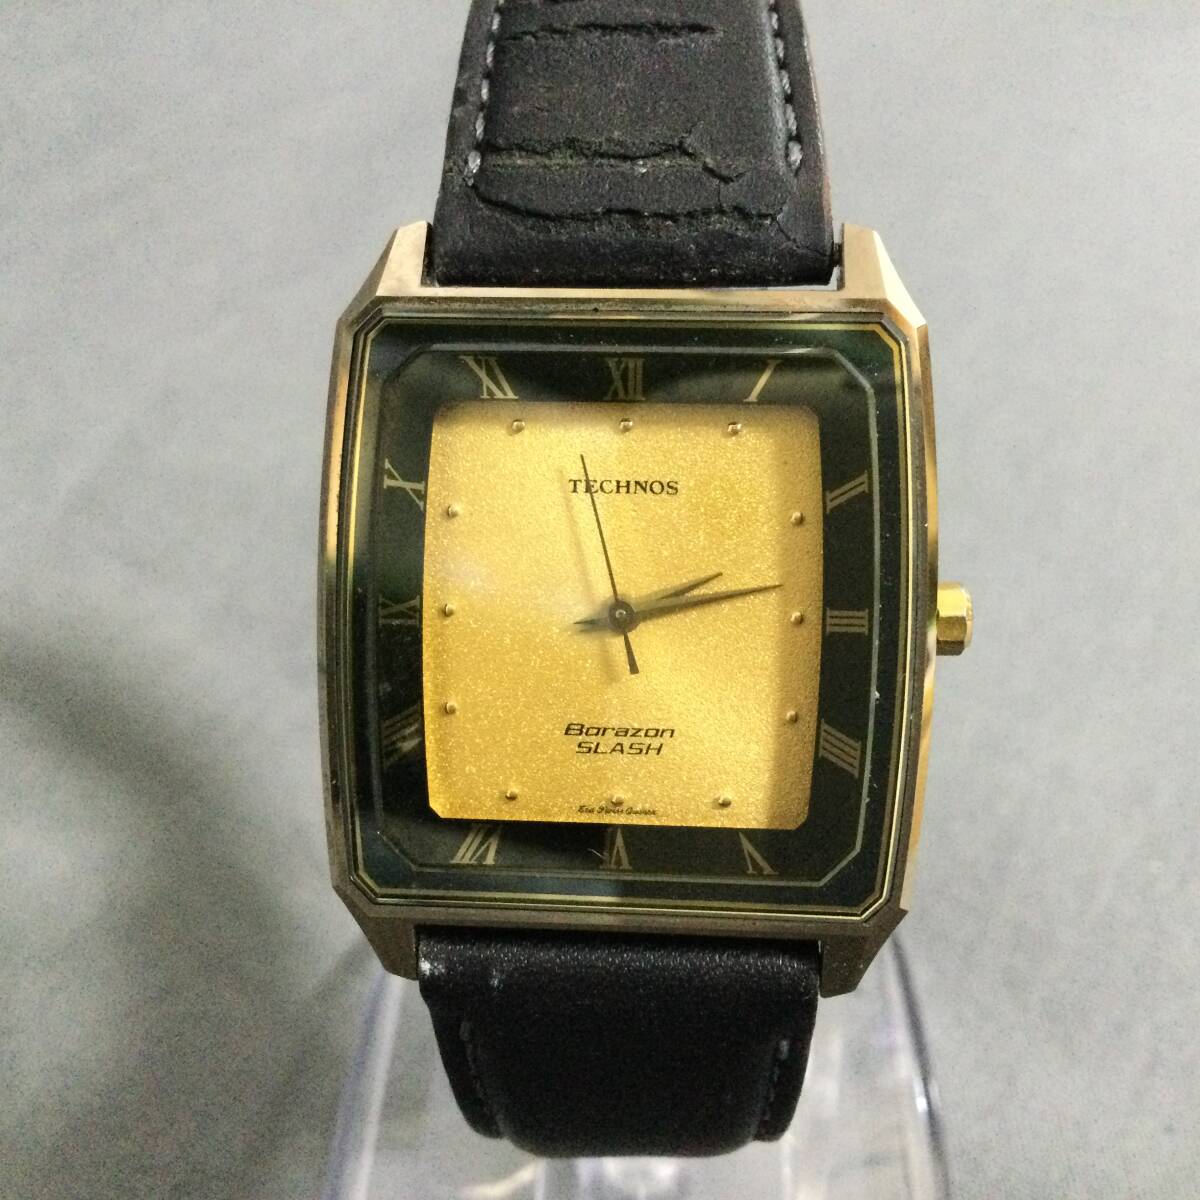 564/16 GJ60523 TECHNOS Borazon SLASH 14102 クォーツ 3針 ゴールドカラー スクエア型 メンズ 稼働 腕時計 テクノスの画像1